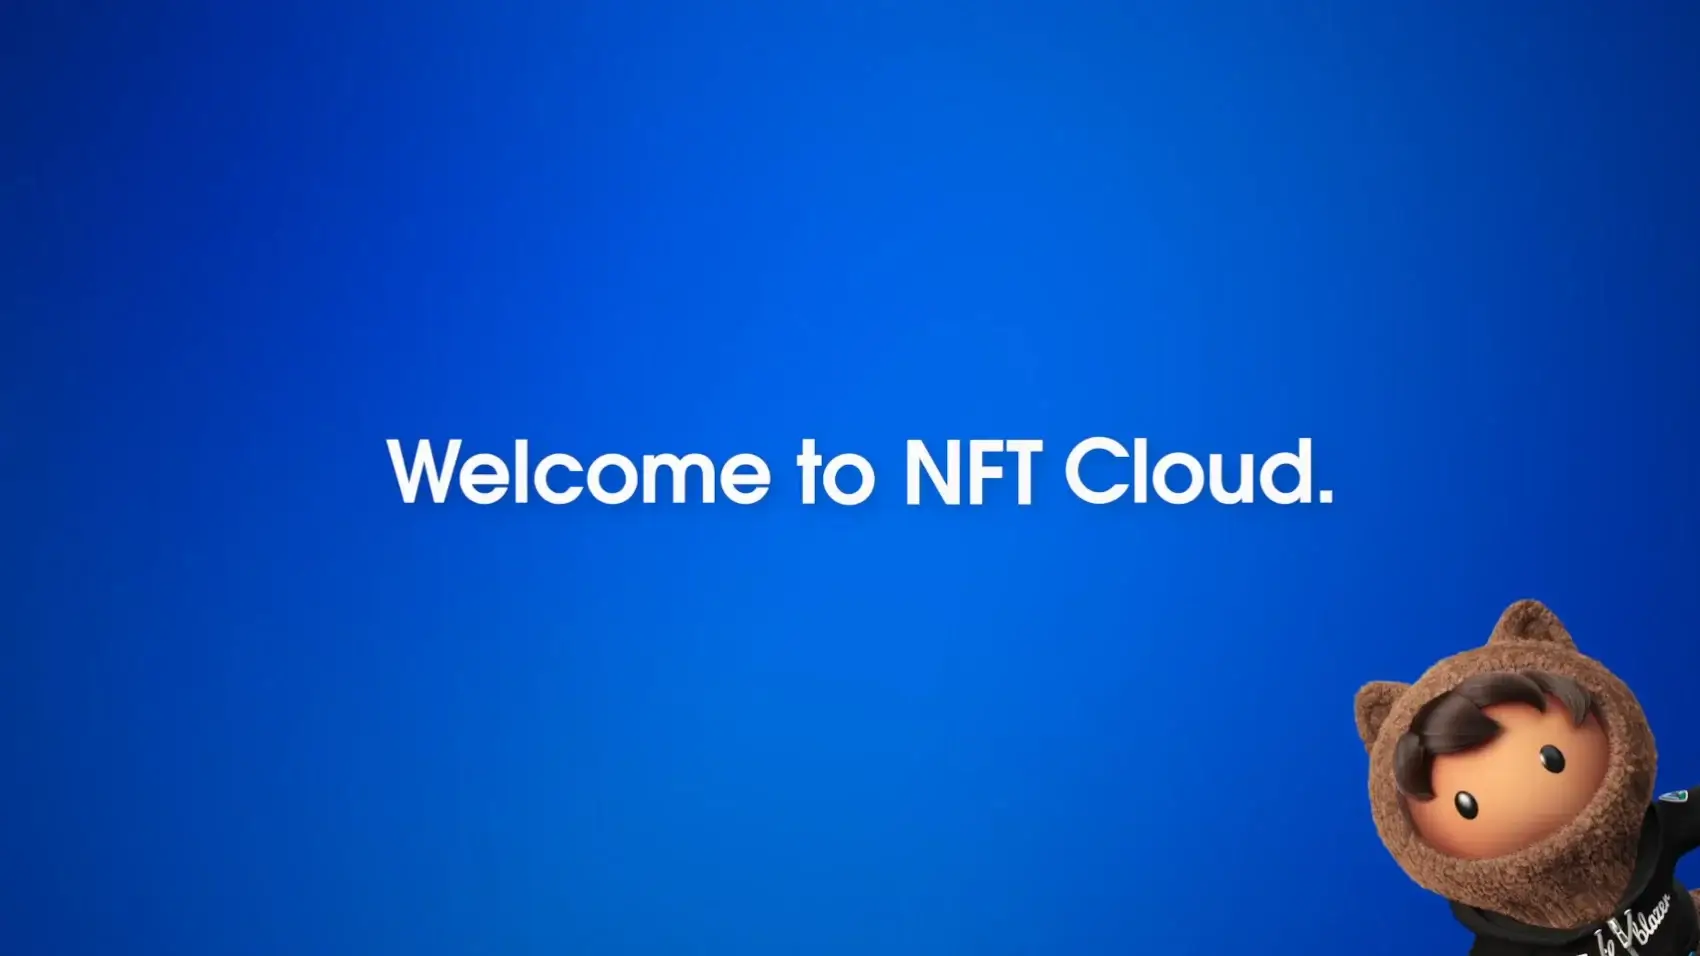 Кто создаёт новые NFT? NFT Cloud от Salesforce. Фото.